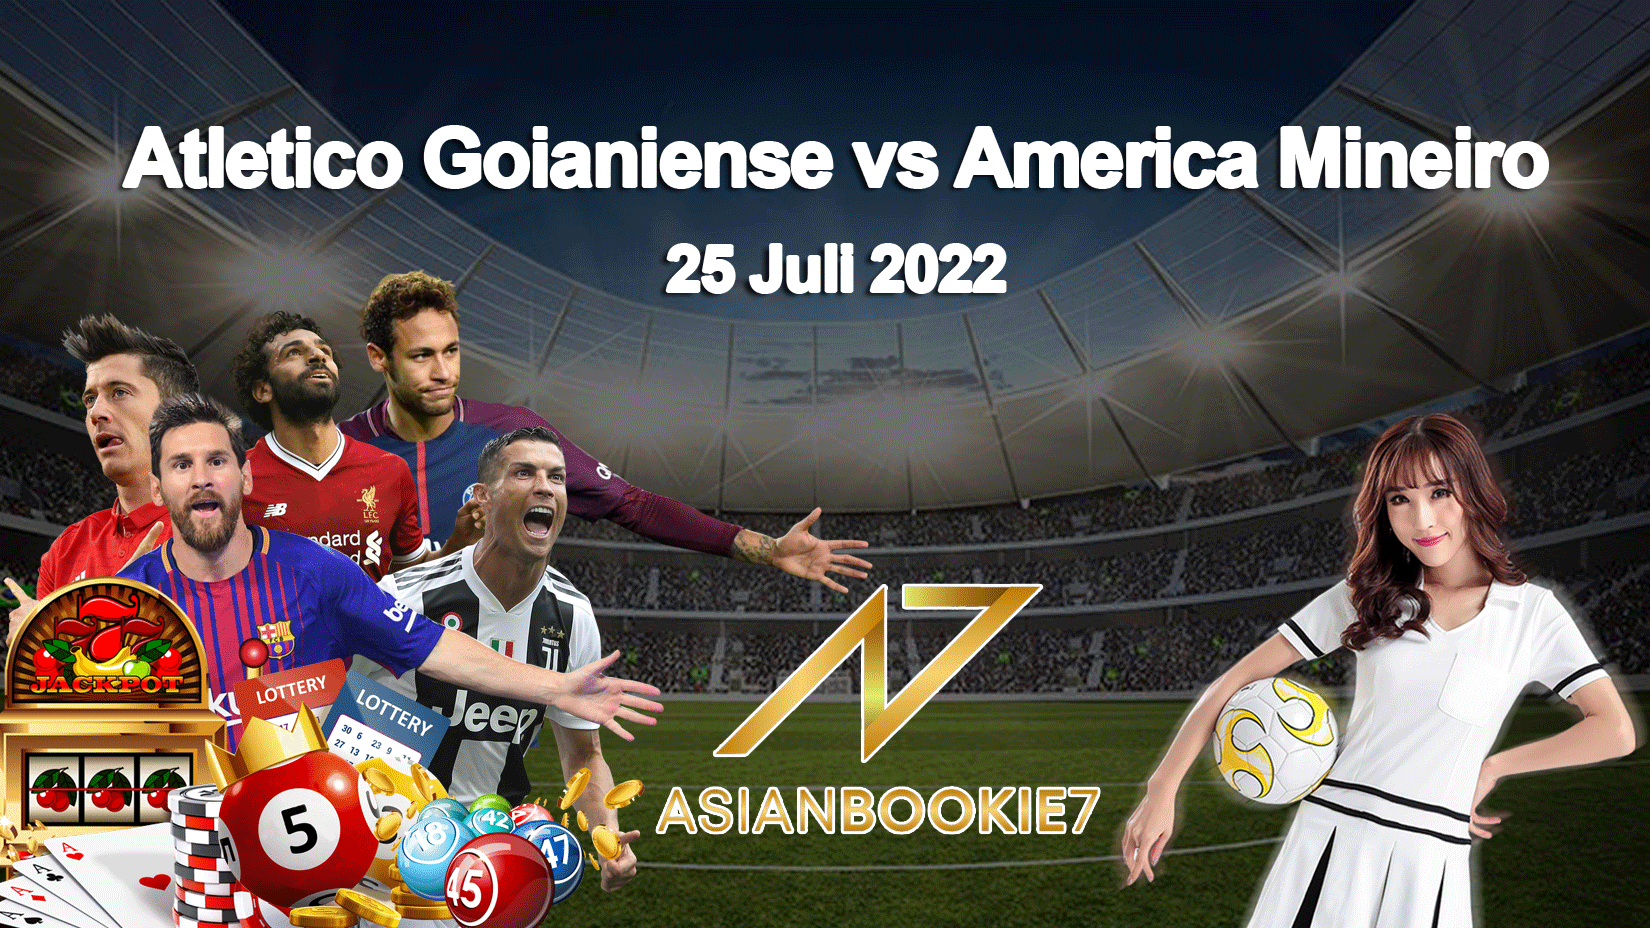 Prediksi Atletico Goianiense vs America Mineiro 25 Juli 2022